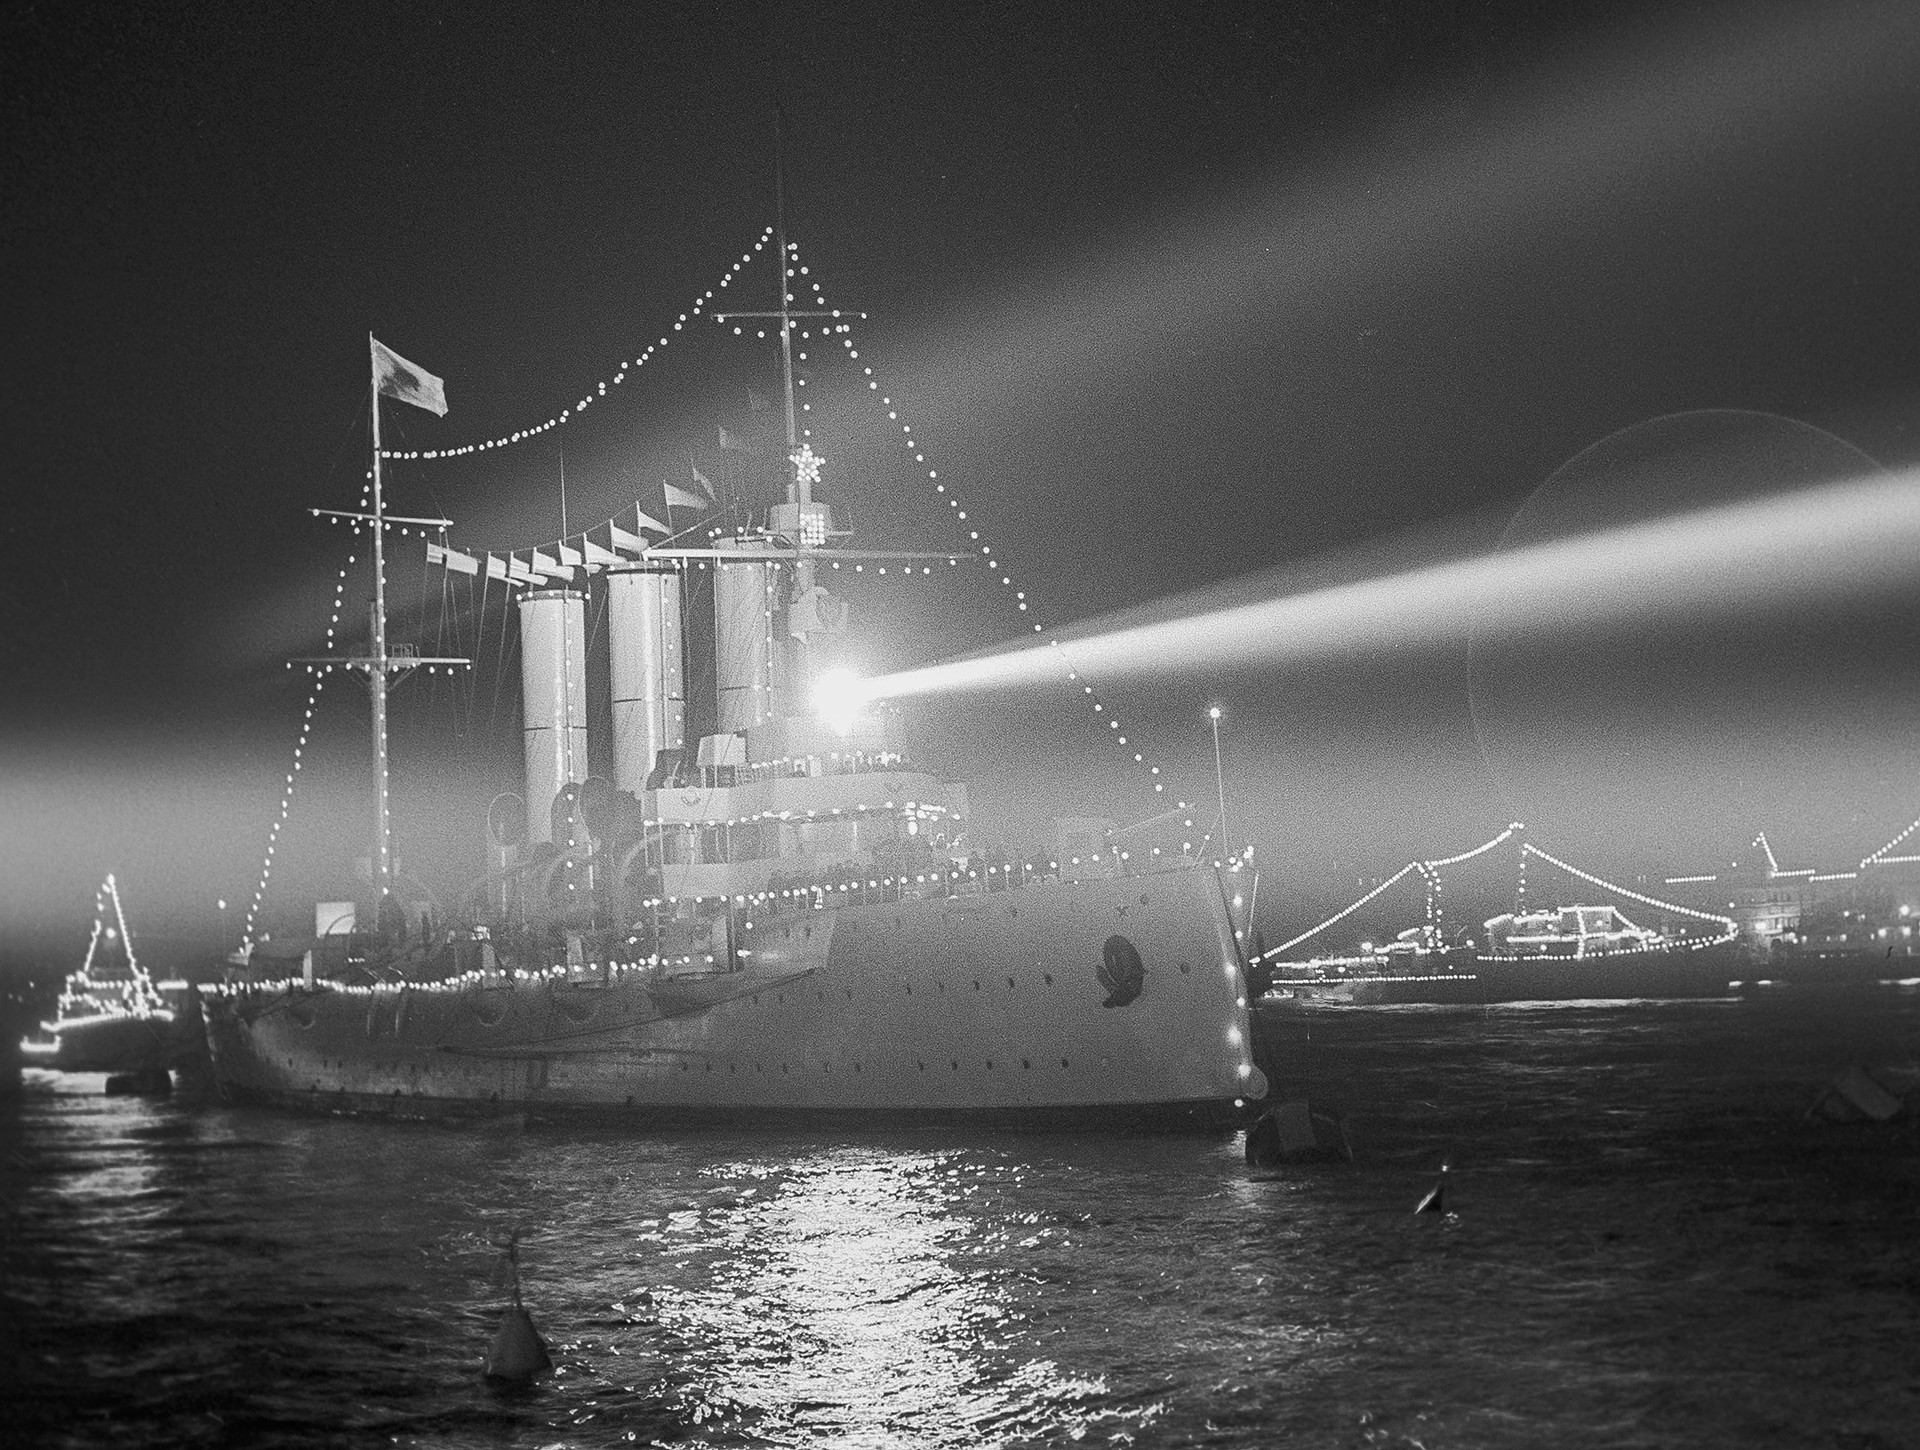 1917 年10月25日に冬の宮殿の攻撃へのサインとなった斉射を行なった場所、シュミット中尉橋付近にある巡洋艦「アヴローラ」。